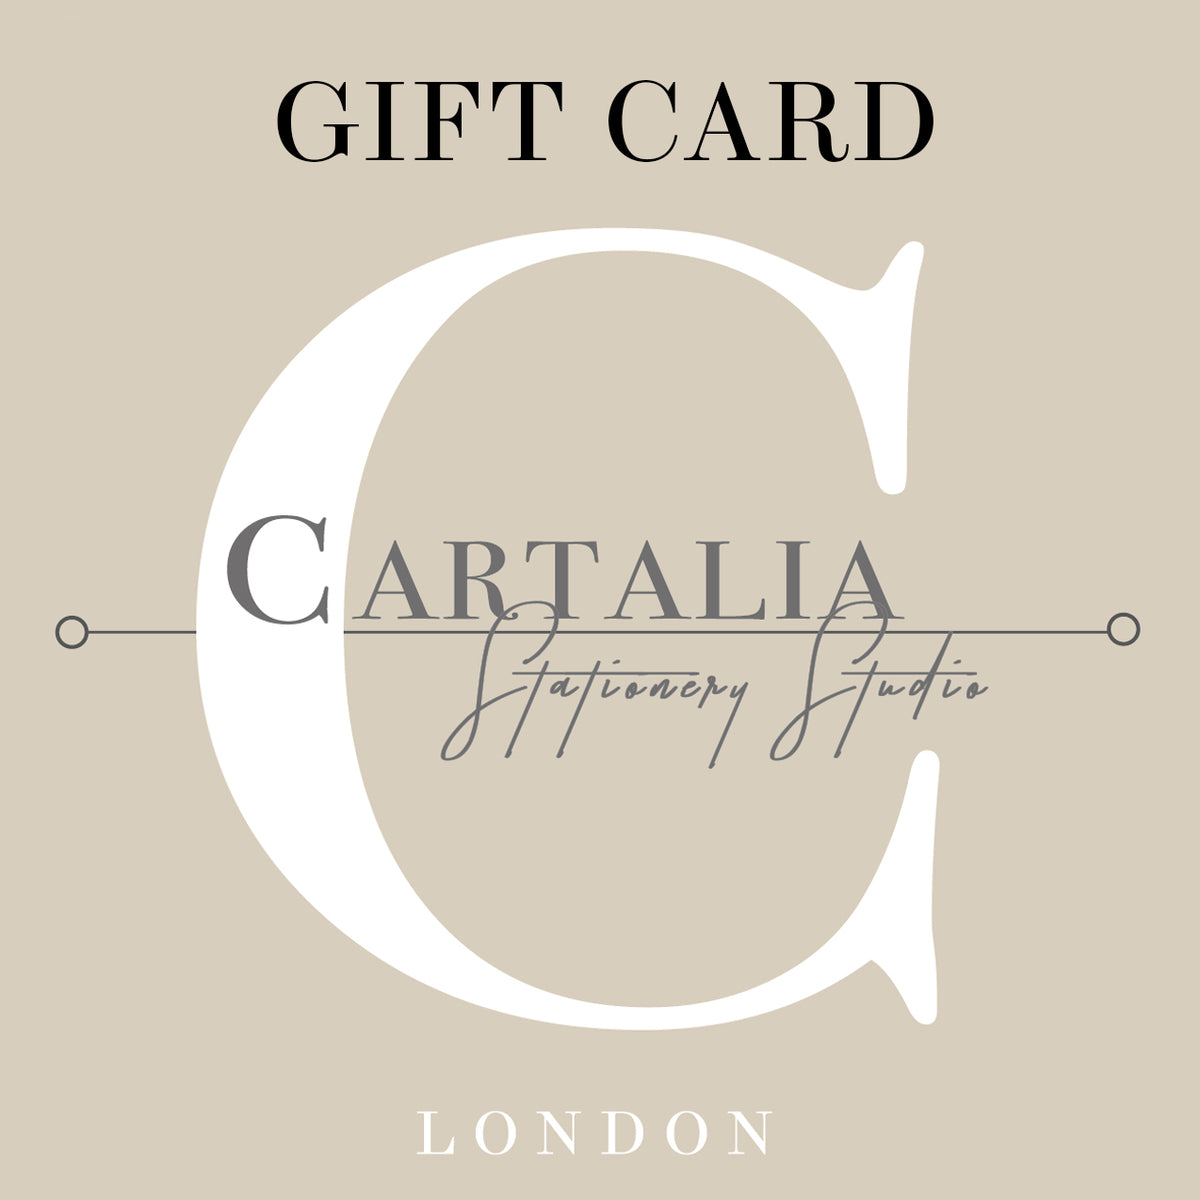 CARTALIA STONERY LONDON - Buono regalo